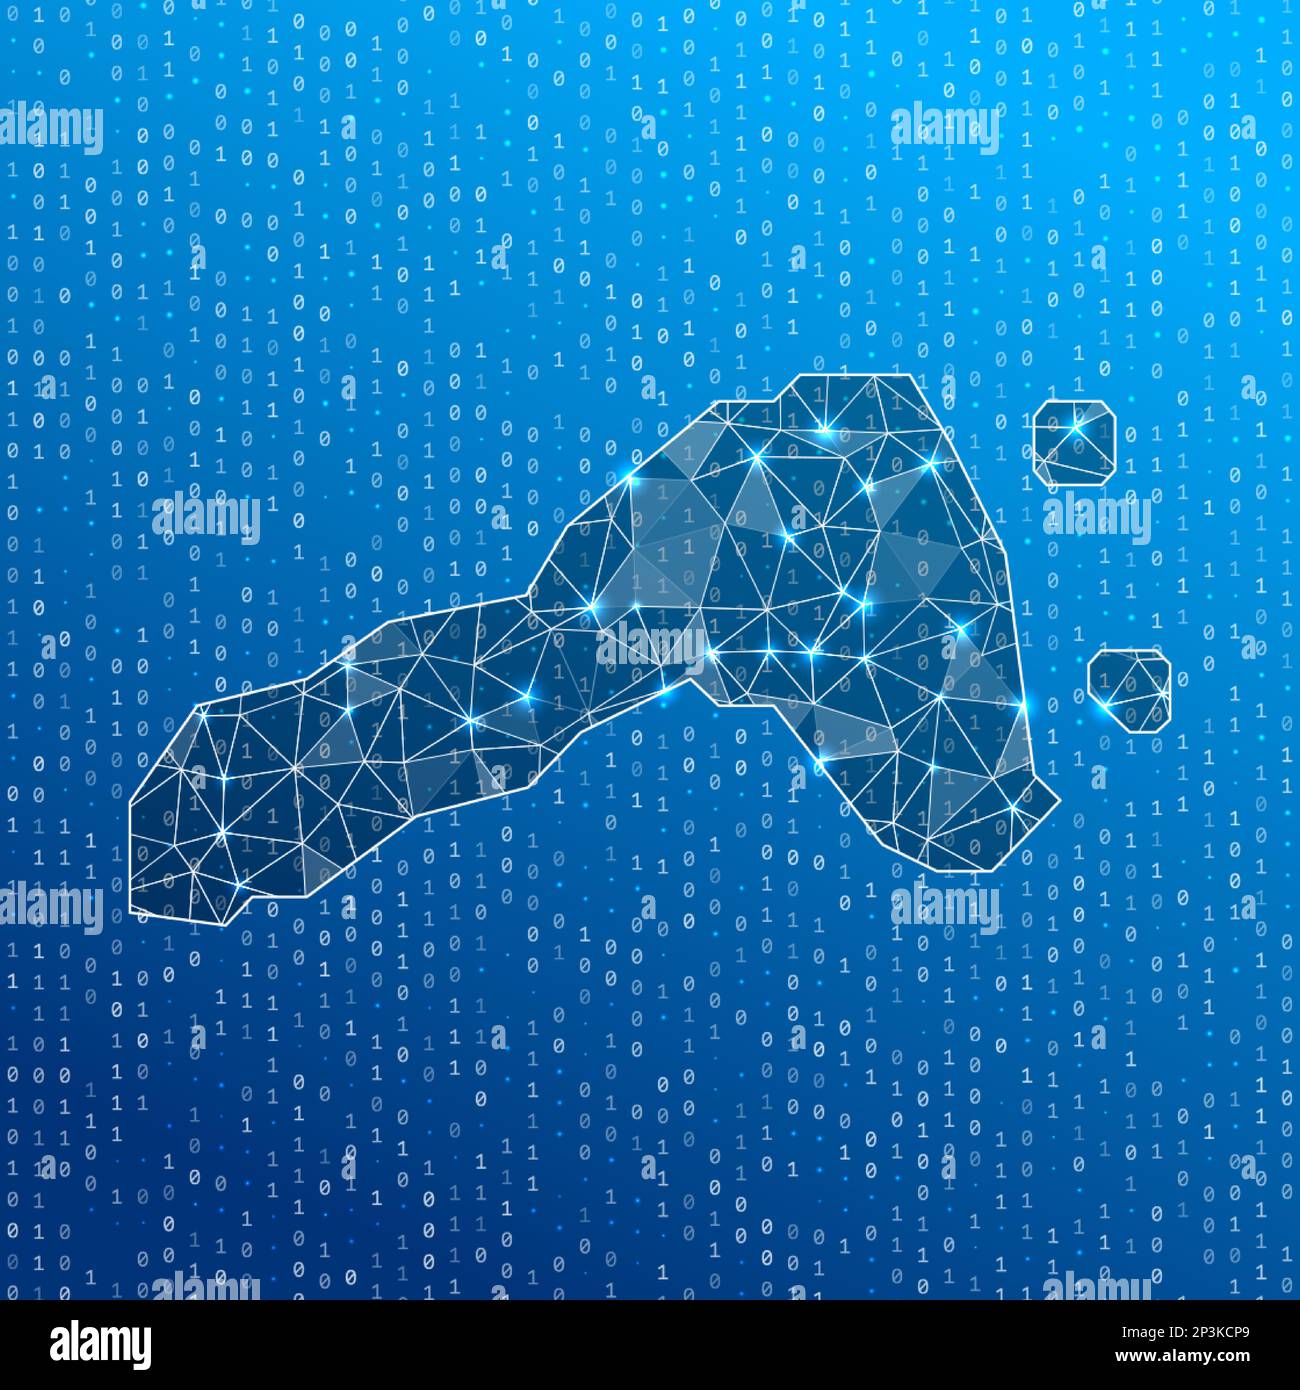 Netzwerkkarte von Ko Lipe. Karte der digitalen Verbindungen der Insel. Technologie, Internet, Netzwerk, Telekommunikationskonzept. Vektordarstellung. Stock Vektor